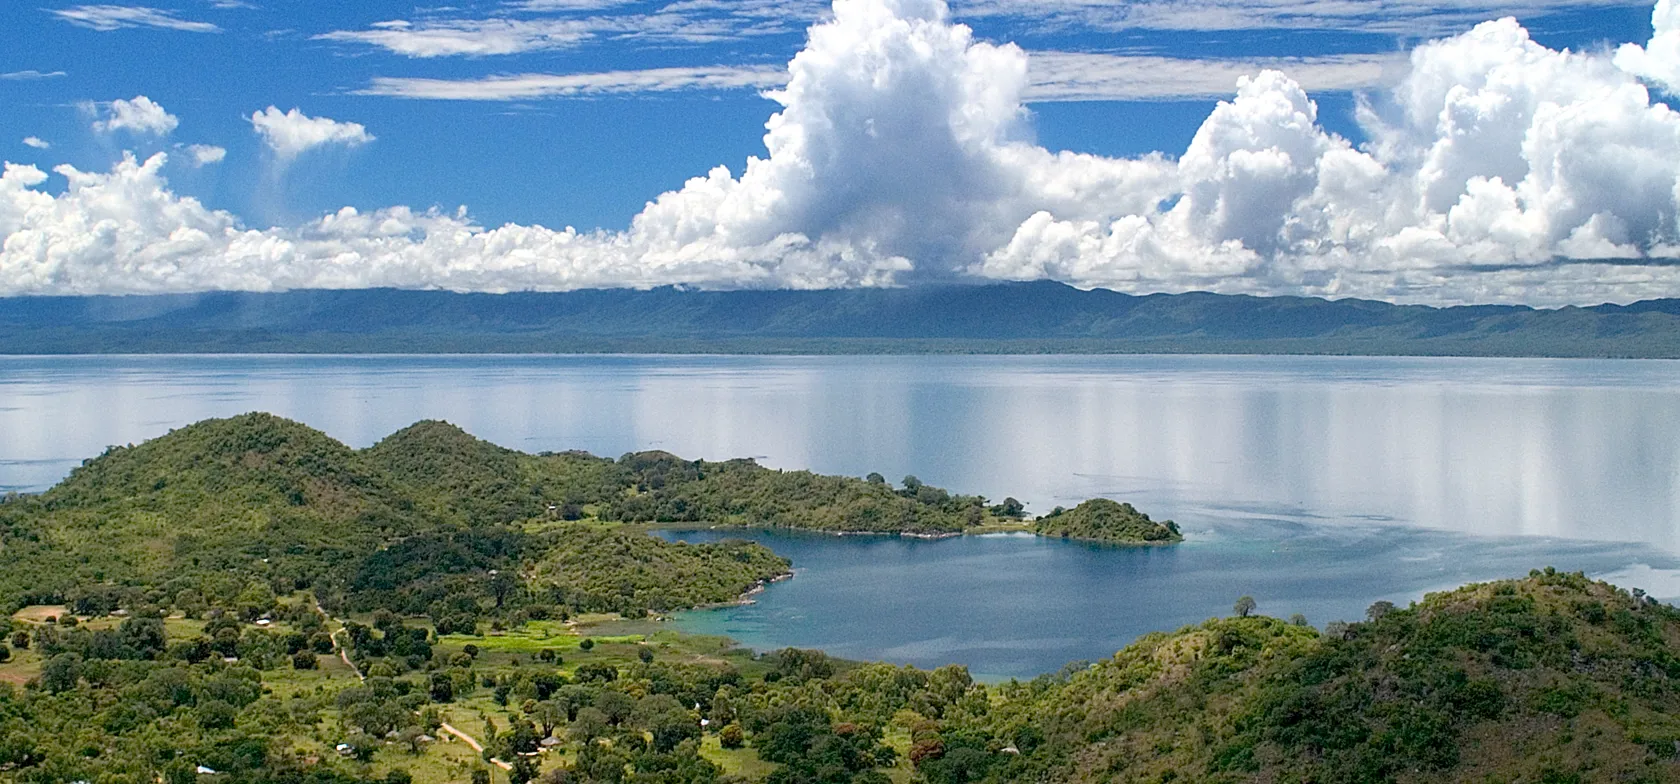 Malawisøen er den 9. største sø i verden. Foto Viktors Farmor